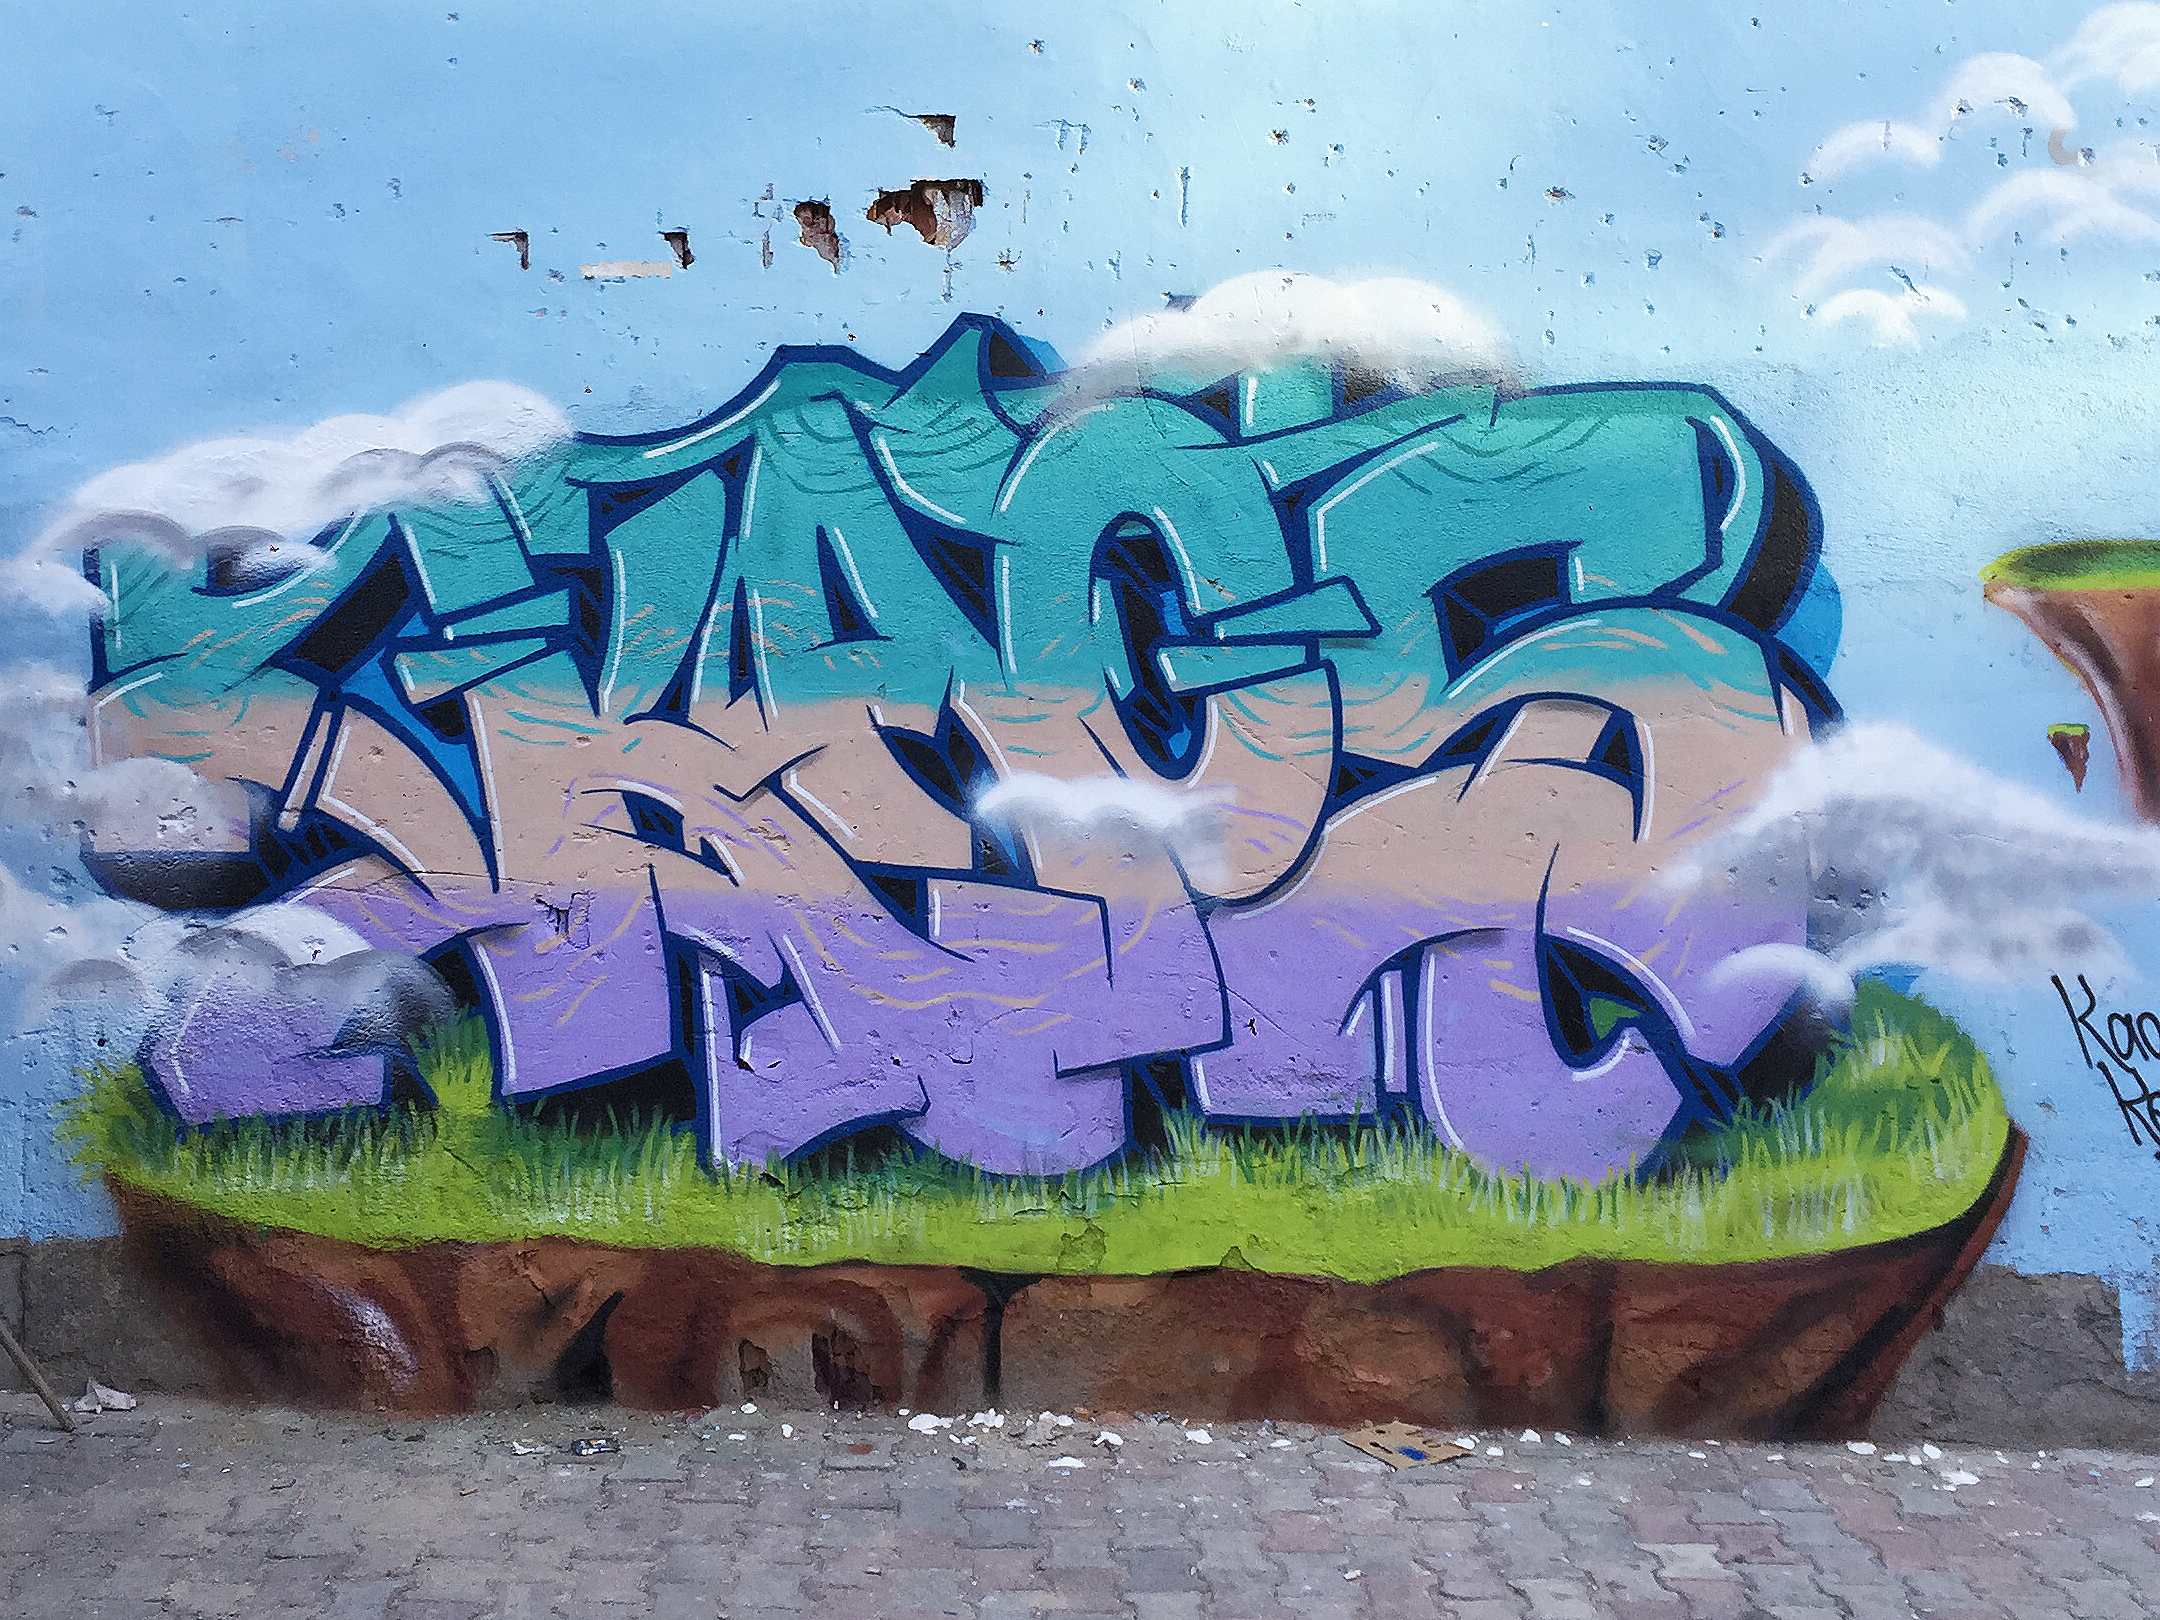 Kaos Graffiti - KibrisPDR